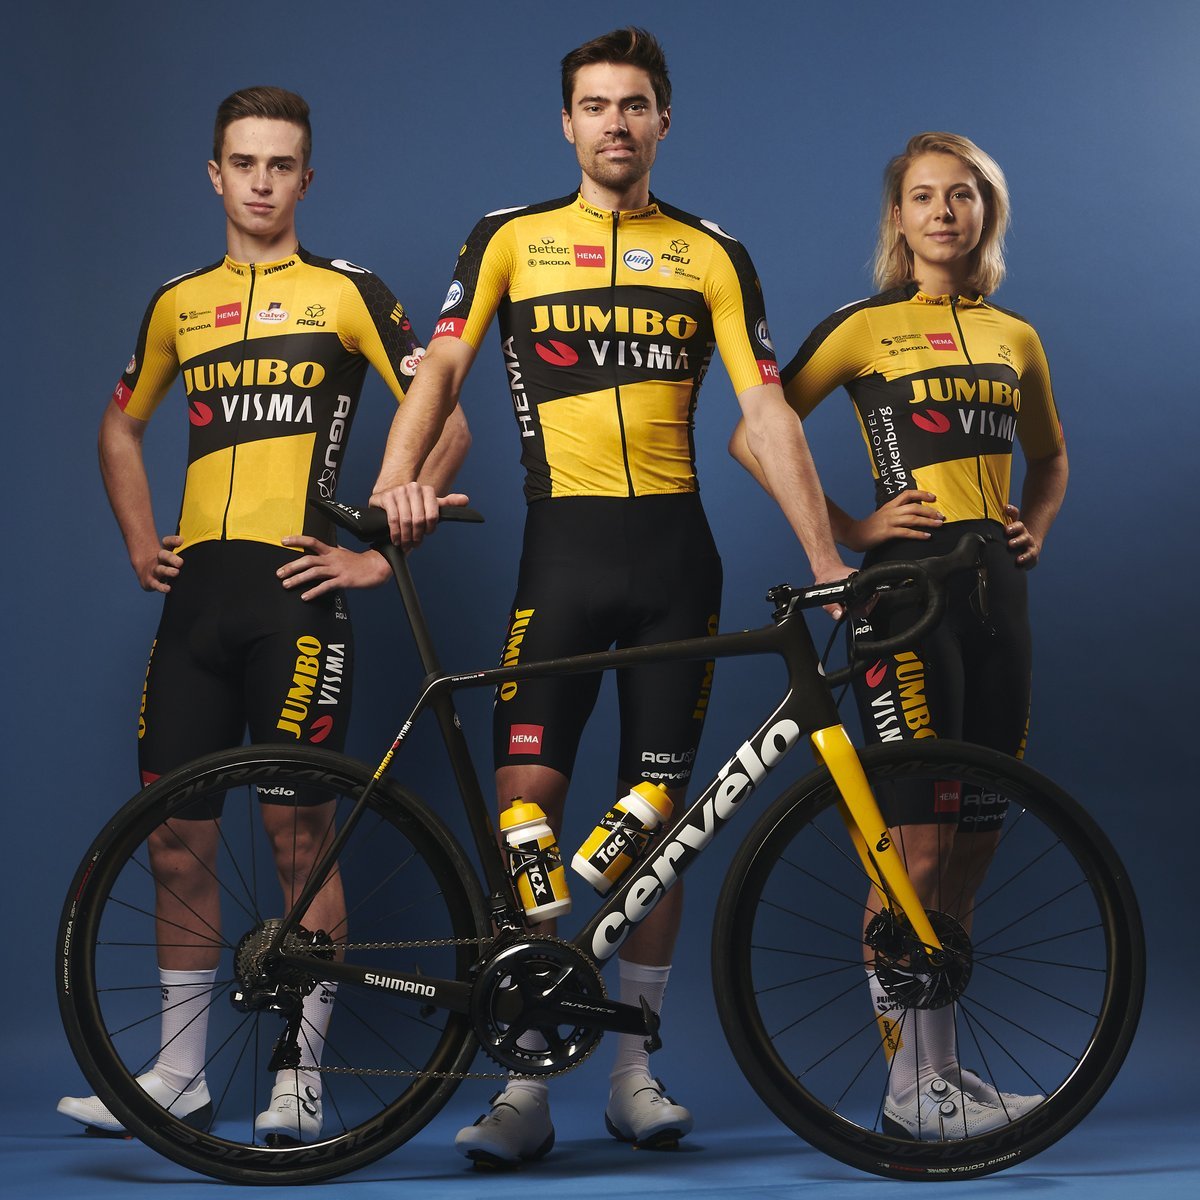 Nieves Moya on X: "Jumbo-Visma subasta bicicletas para apoyar a los jóvenes  talentos ciclistas Si quieres tener la bicicleta que montó Jonas Vingegaard  en su camino hacia la victoria en el Tour